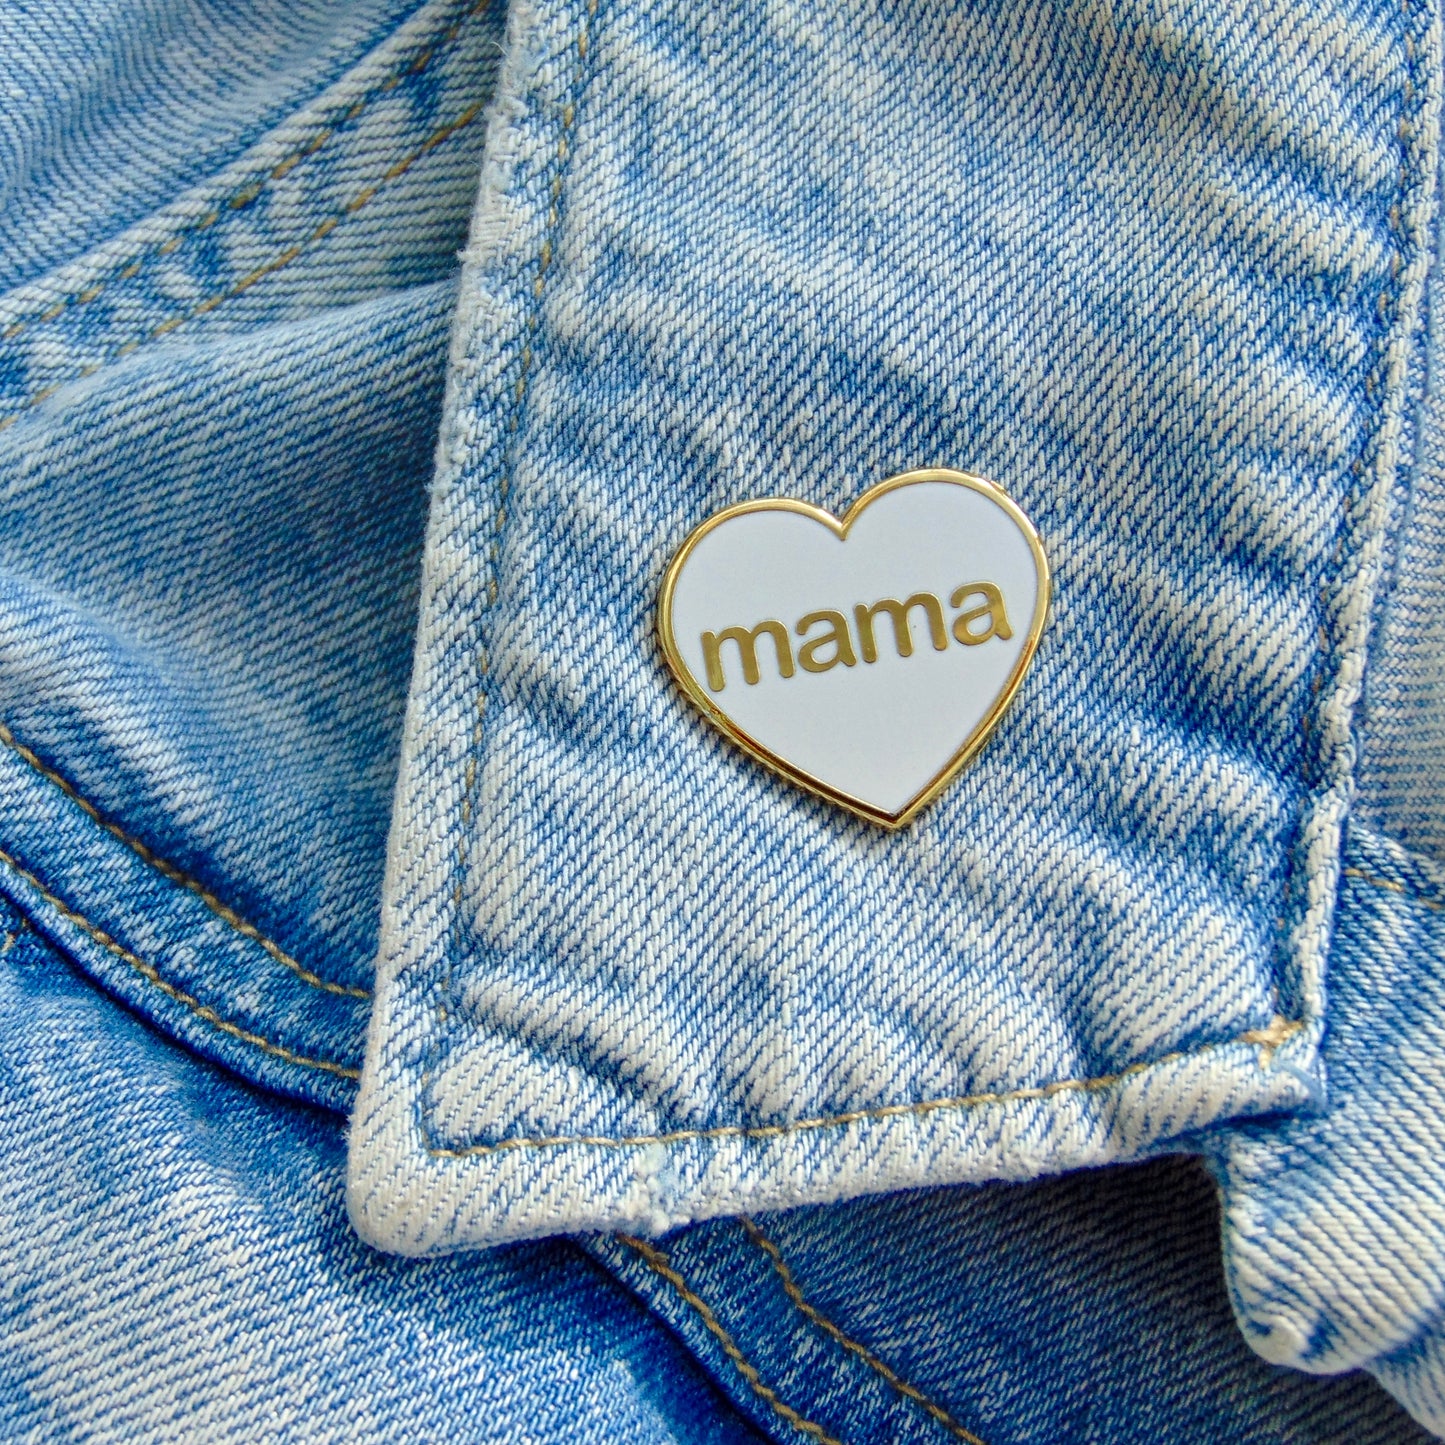 Mama Pin Badge - White and Gold